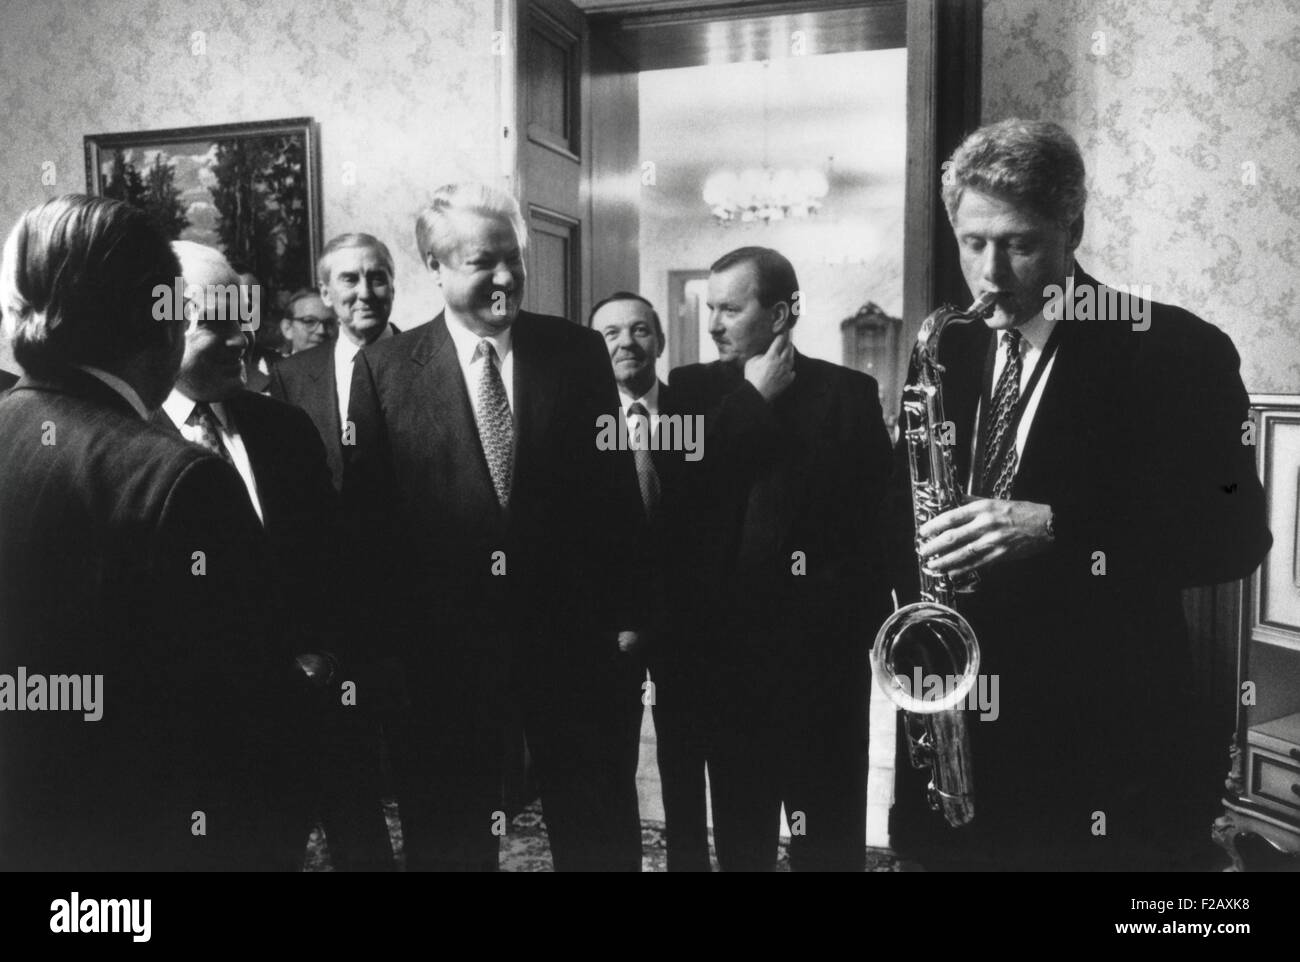 Präsident Bill Clinton spielt das Saxophon, ihn vom russischen Präsidenten Boris Yeltsin vorgelegt. Jelzin veranstaltet ein privates Abendessen Stockfoto